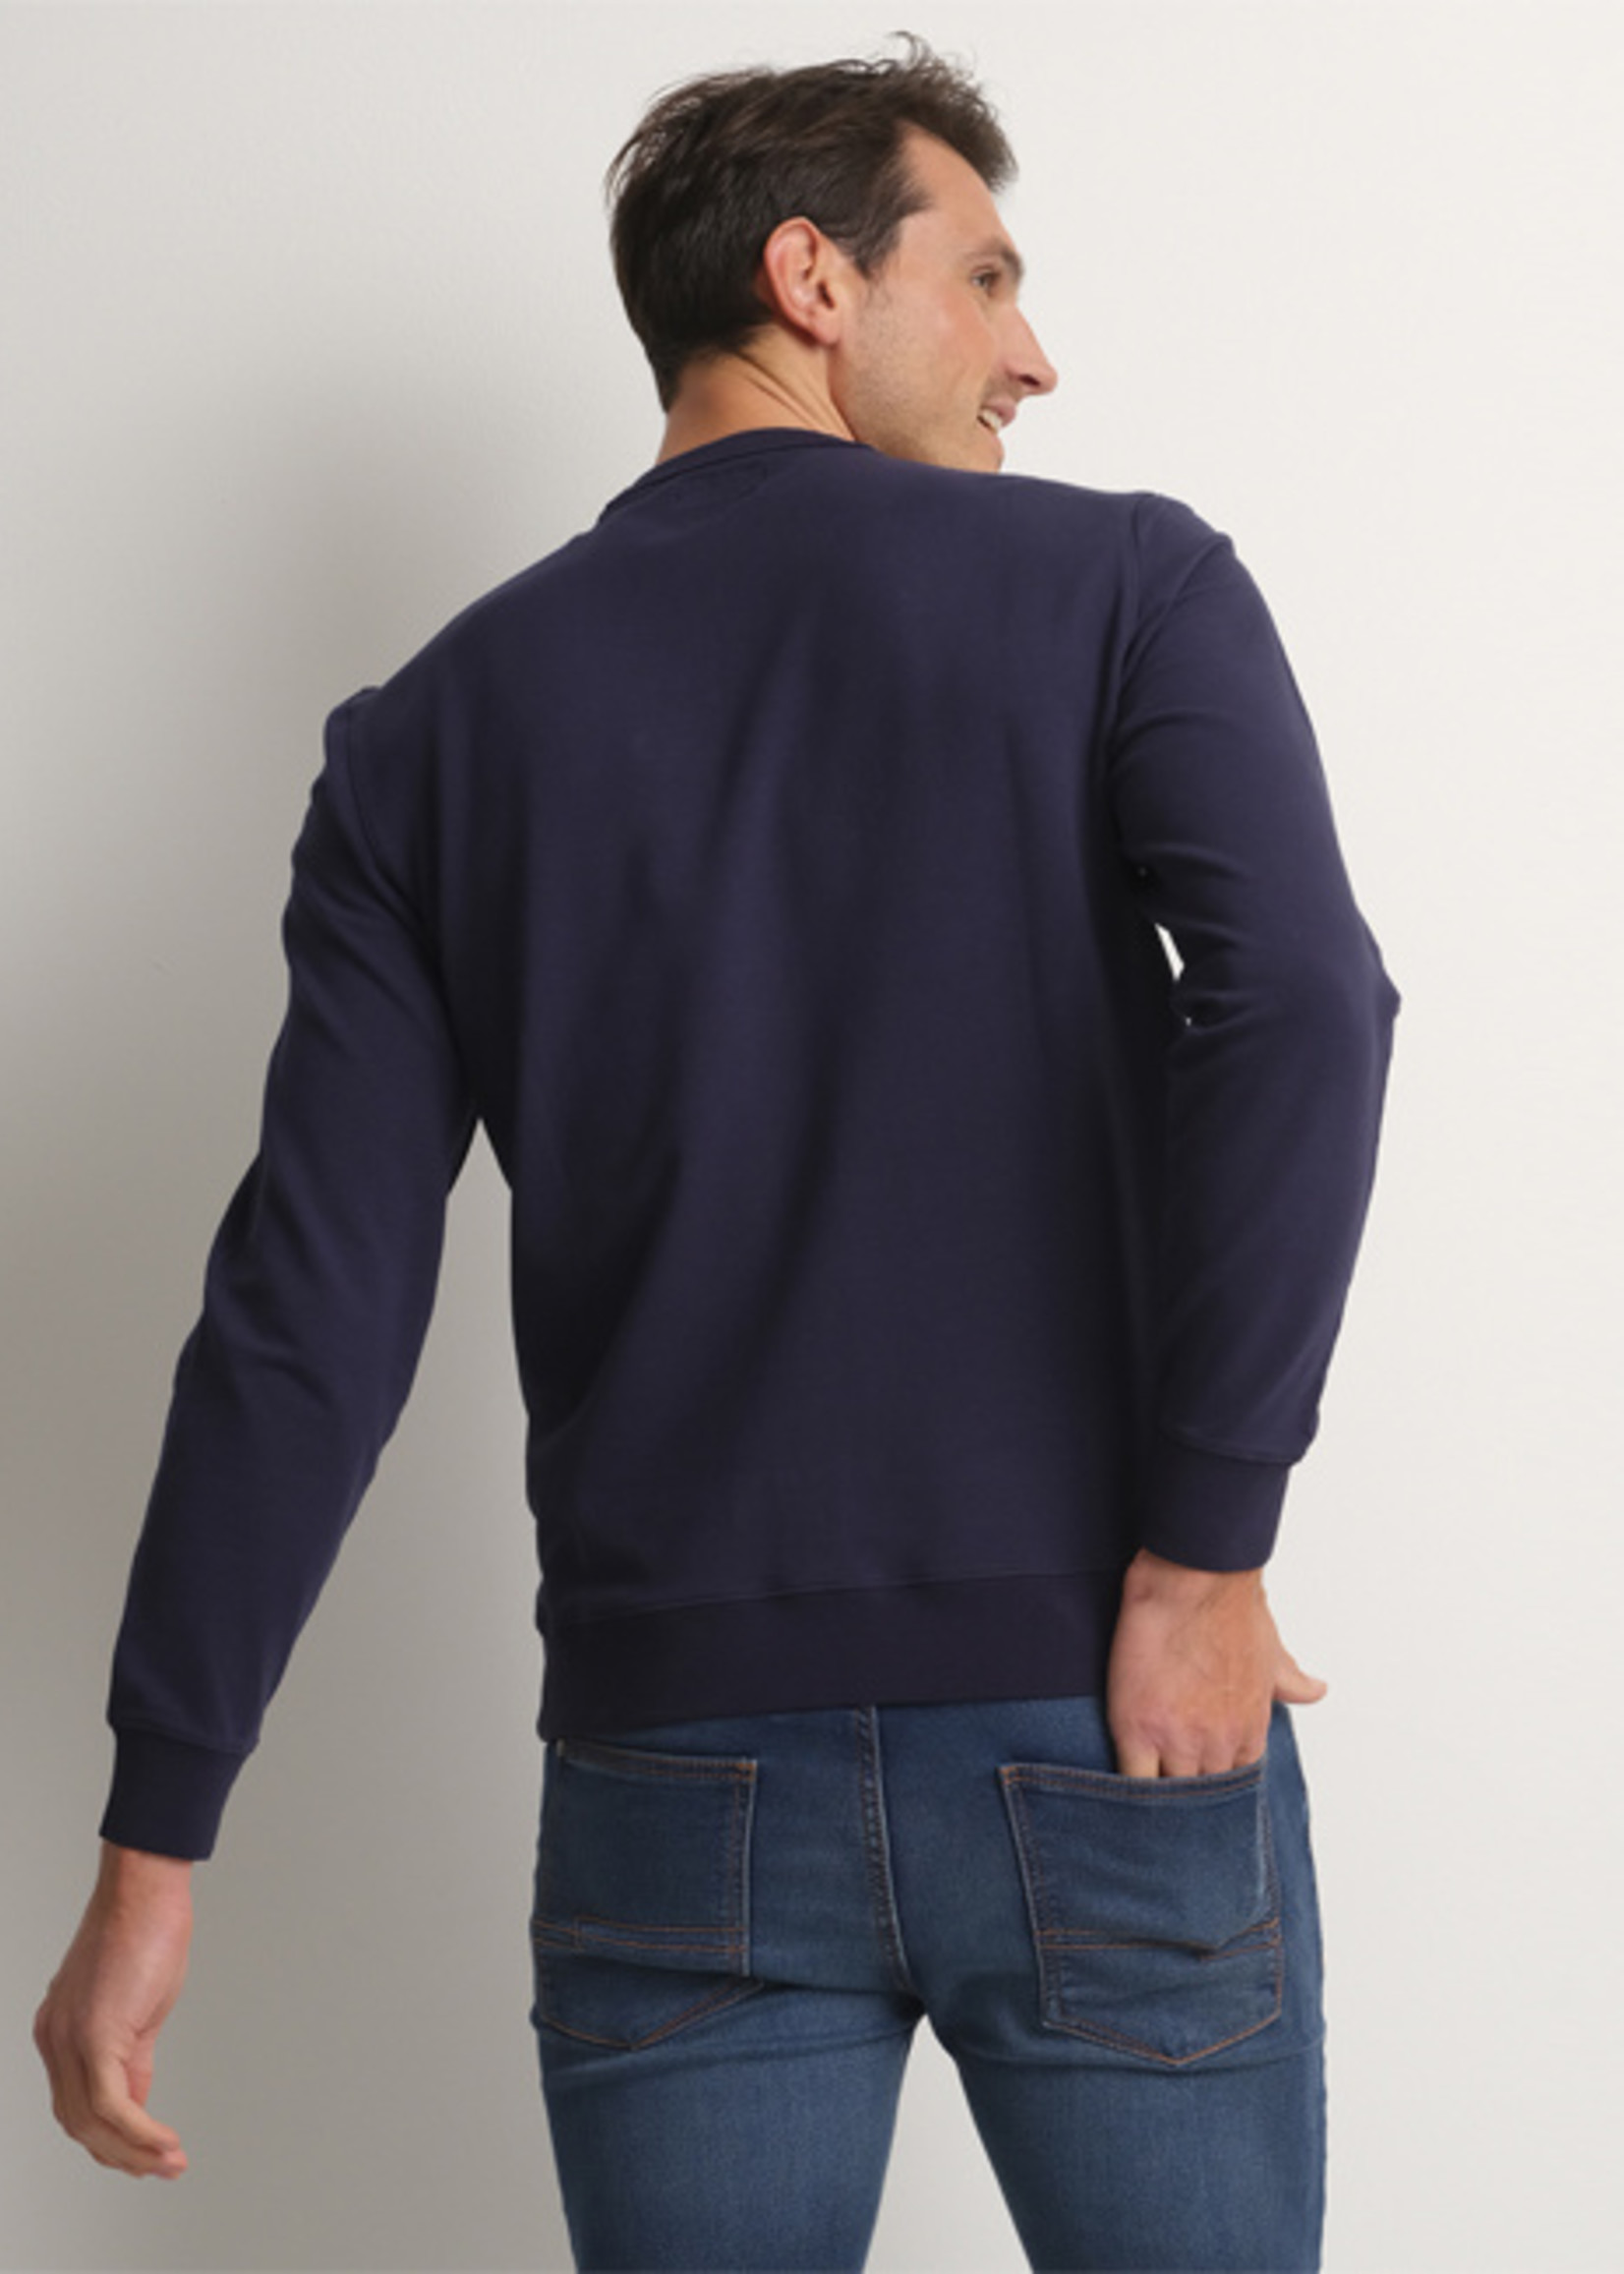 Comodo Shirts Navy Blue stretch sweater